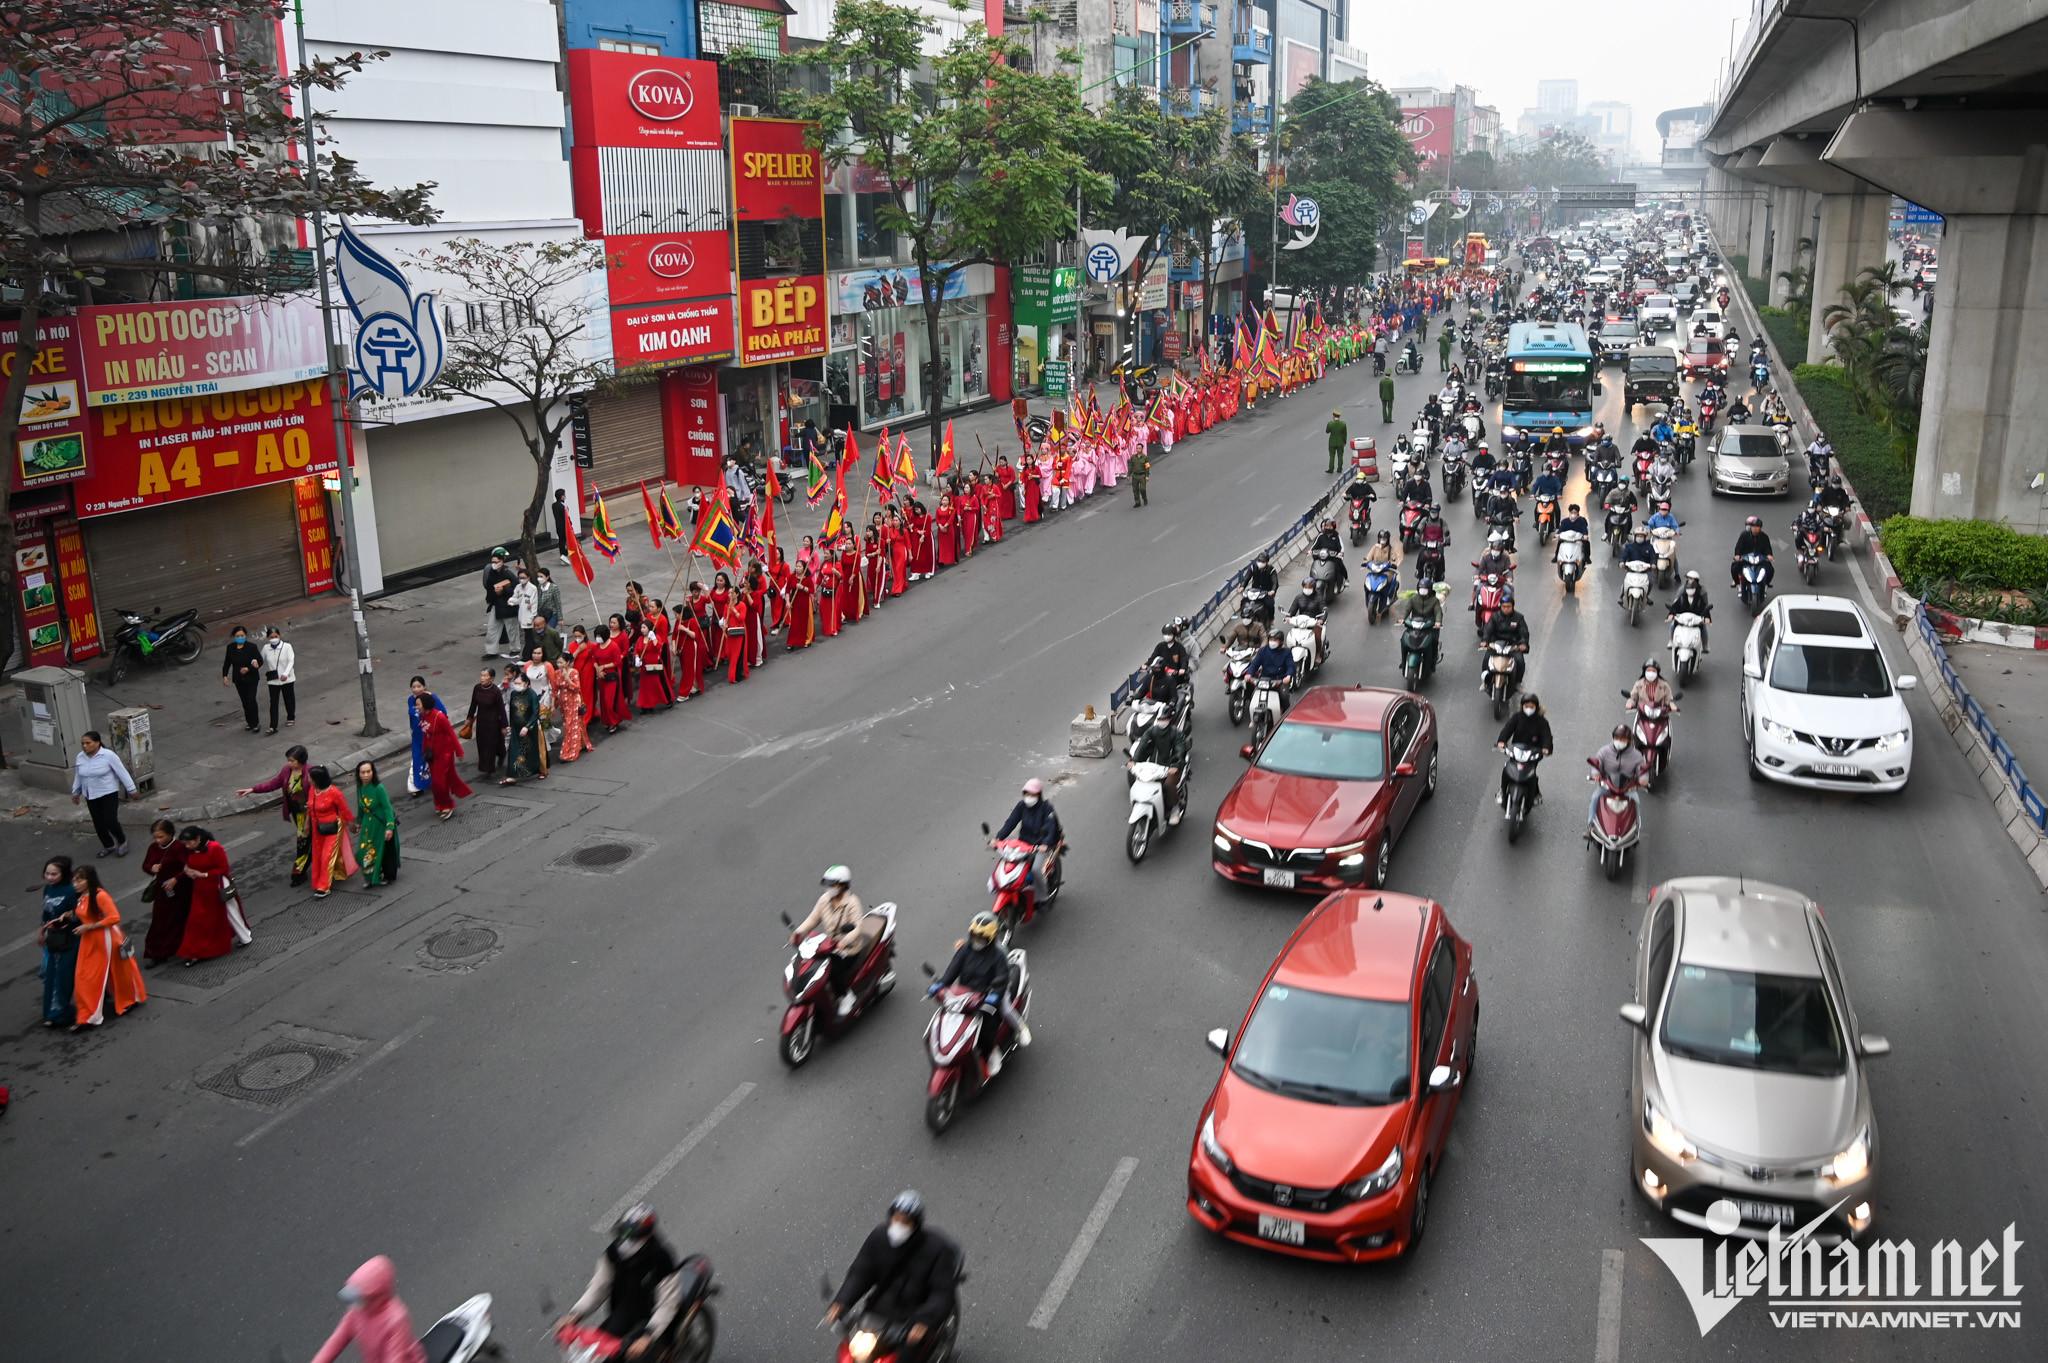 Kỳ lạ màn rước kiệu như chạy marathon trên đường phố Hà Nội - 5